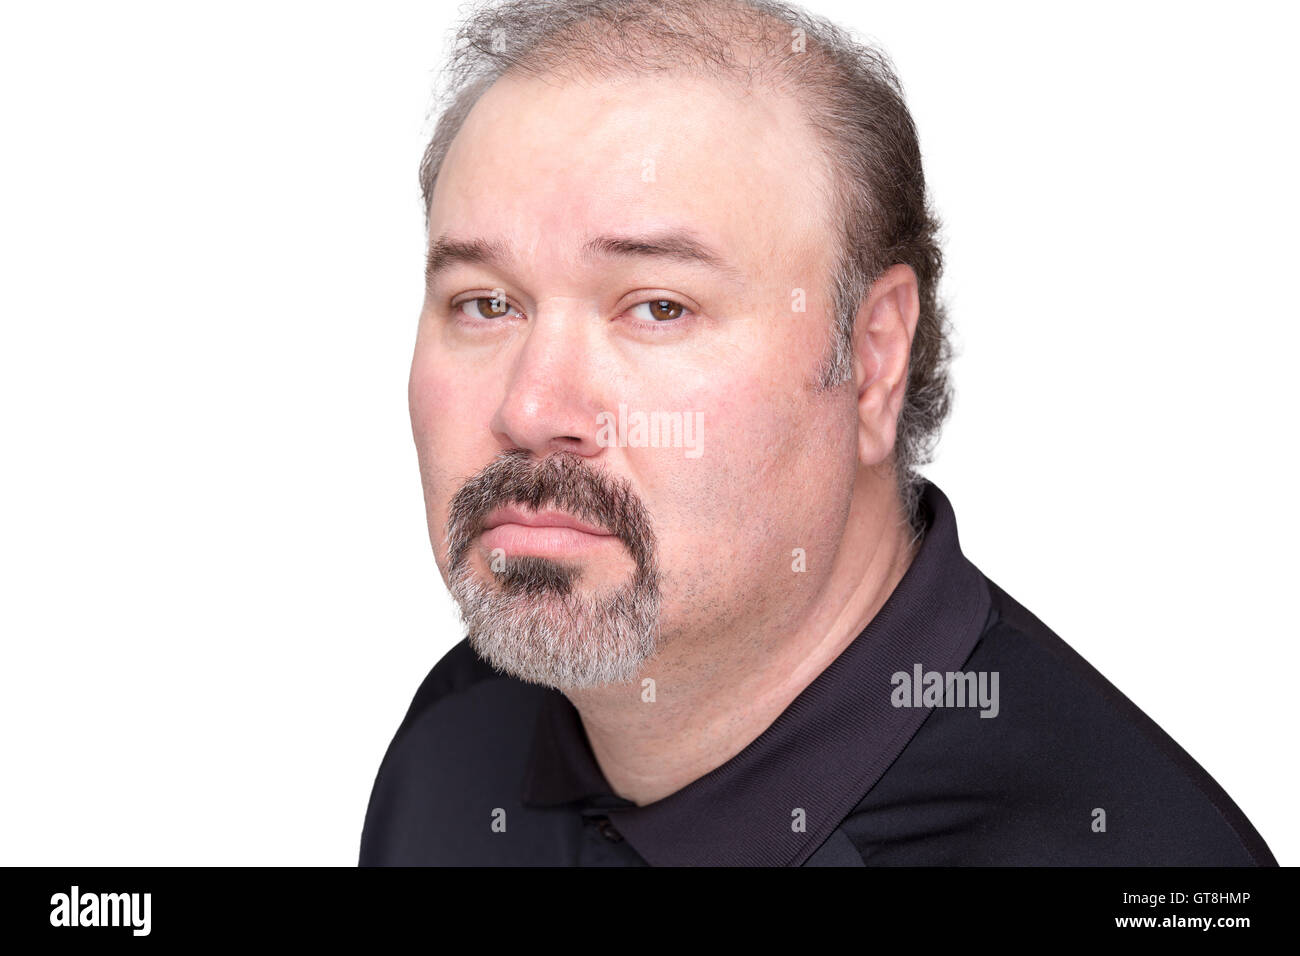 Portrait de l'homme d'âge moyen baissés en chemise noire avec barbe et moustache grisonnante sur fond blanc Banque D'Images